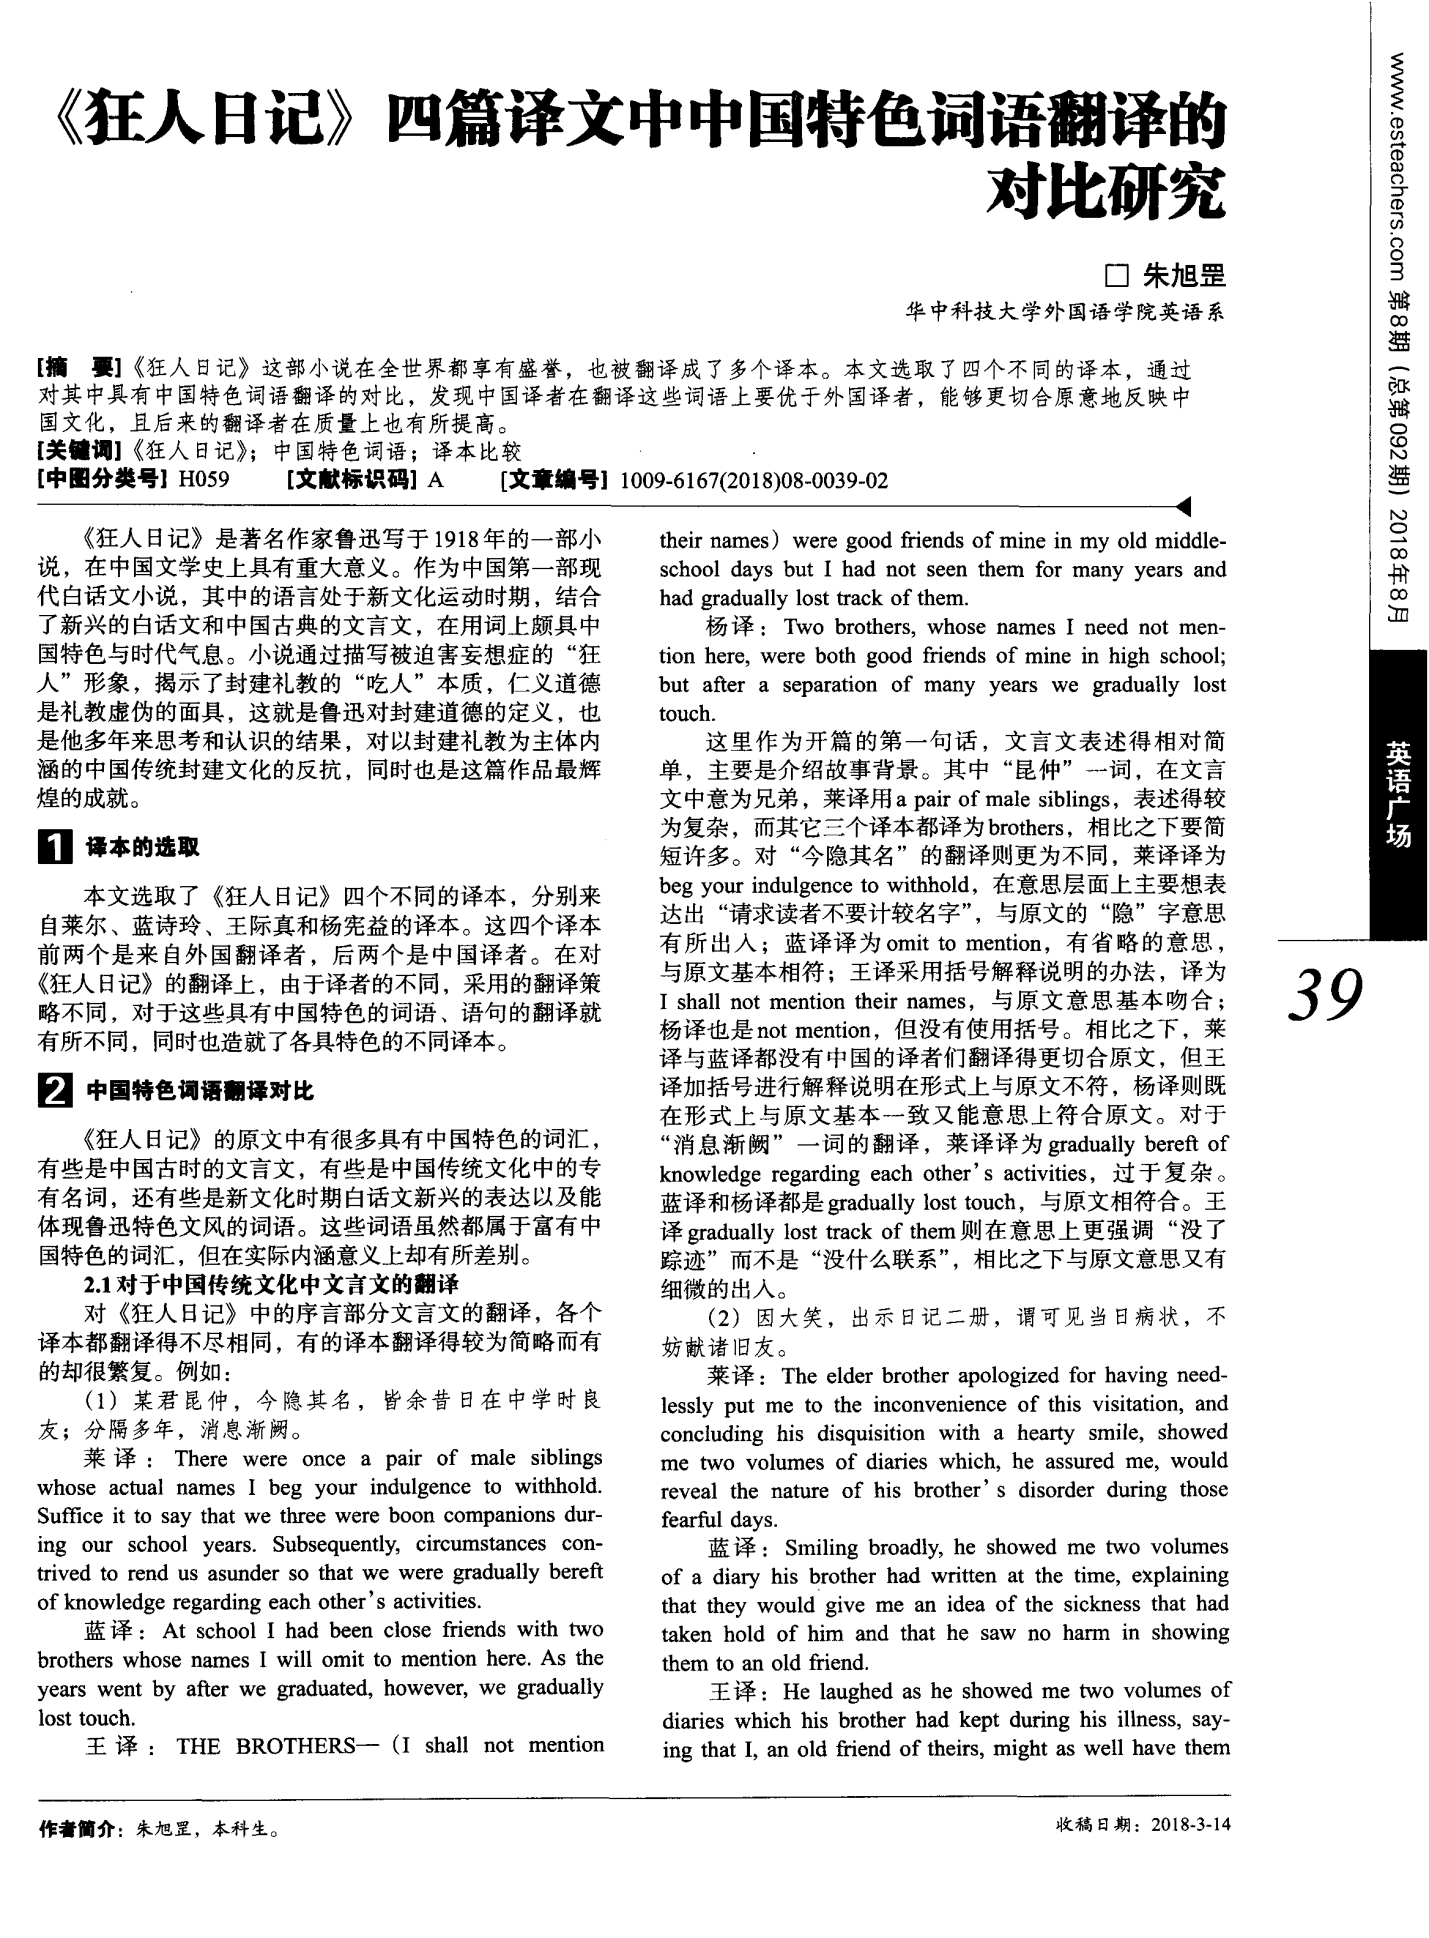 《狂人日记》四篇译文中中国特色词语翻译的对比研究